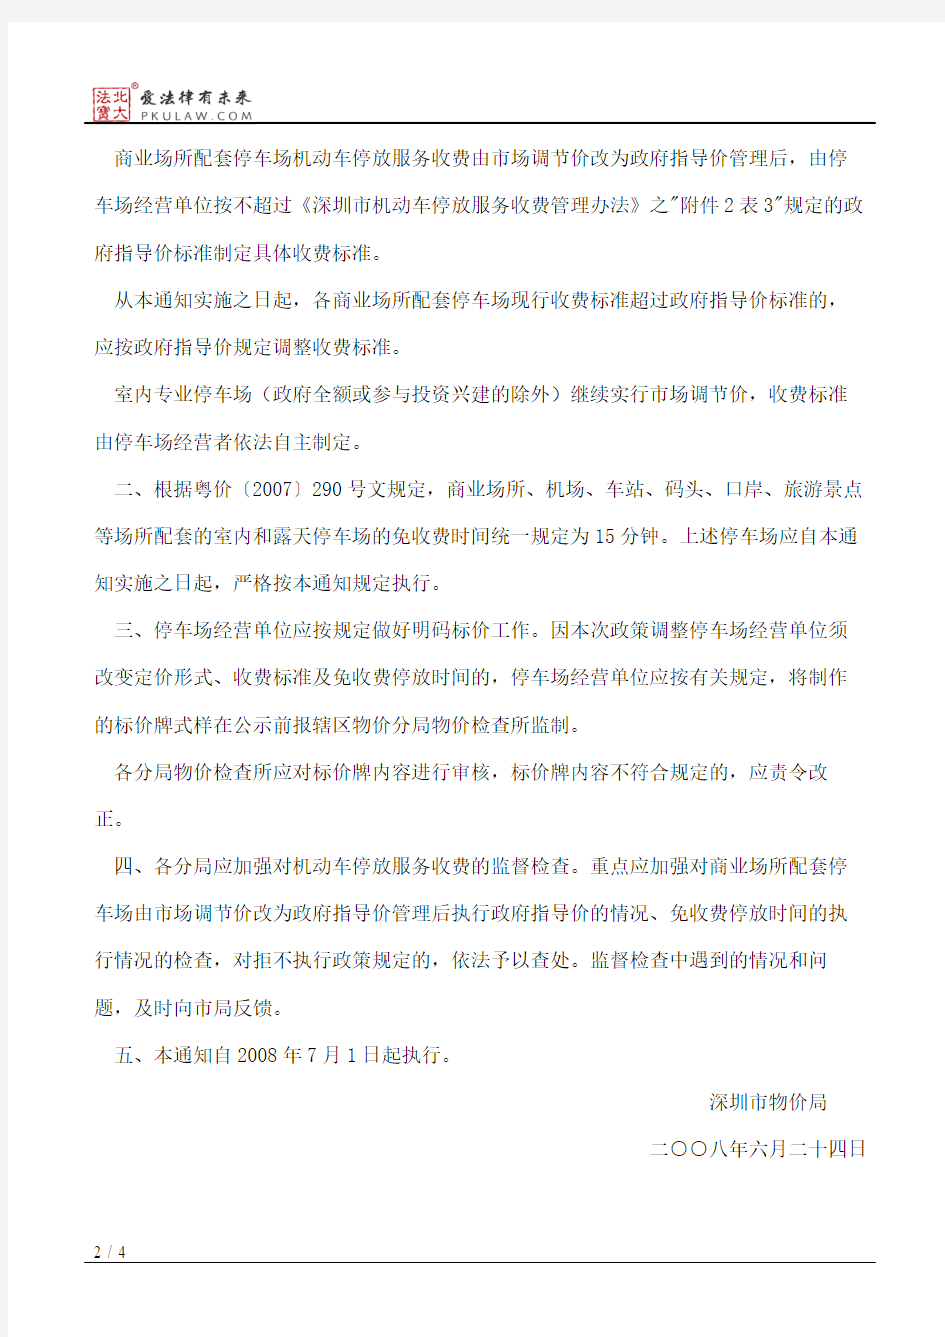 深圳市物价局关于发布《深圳市机动车停放服务收费管理办法》的通知